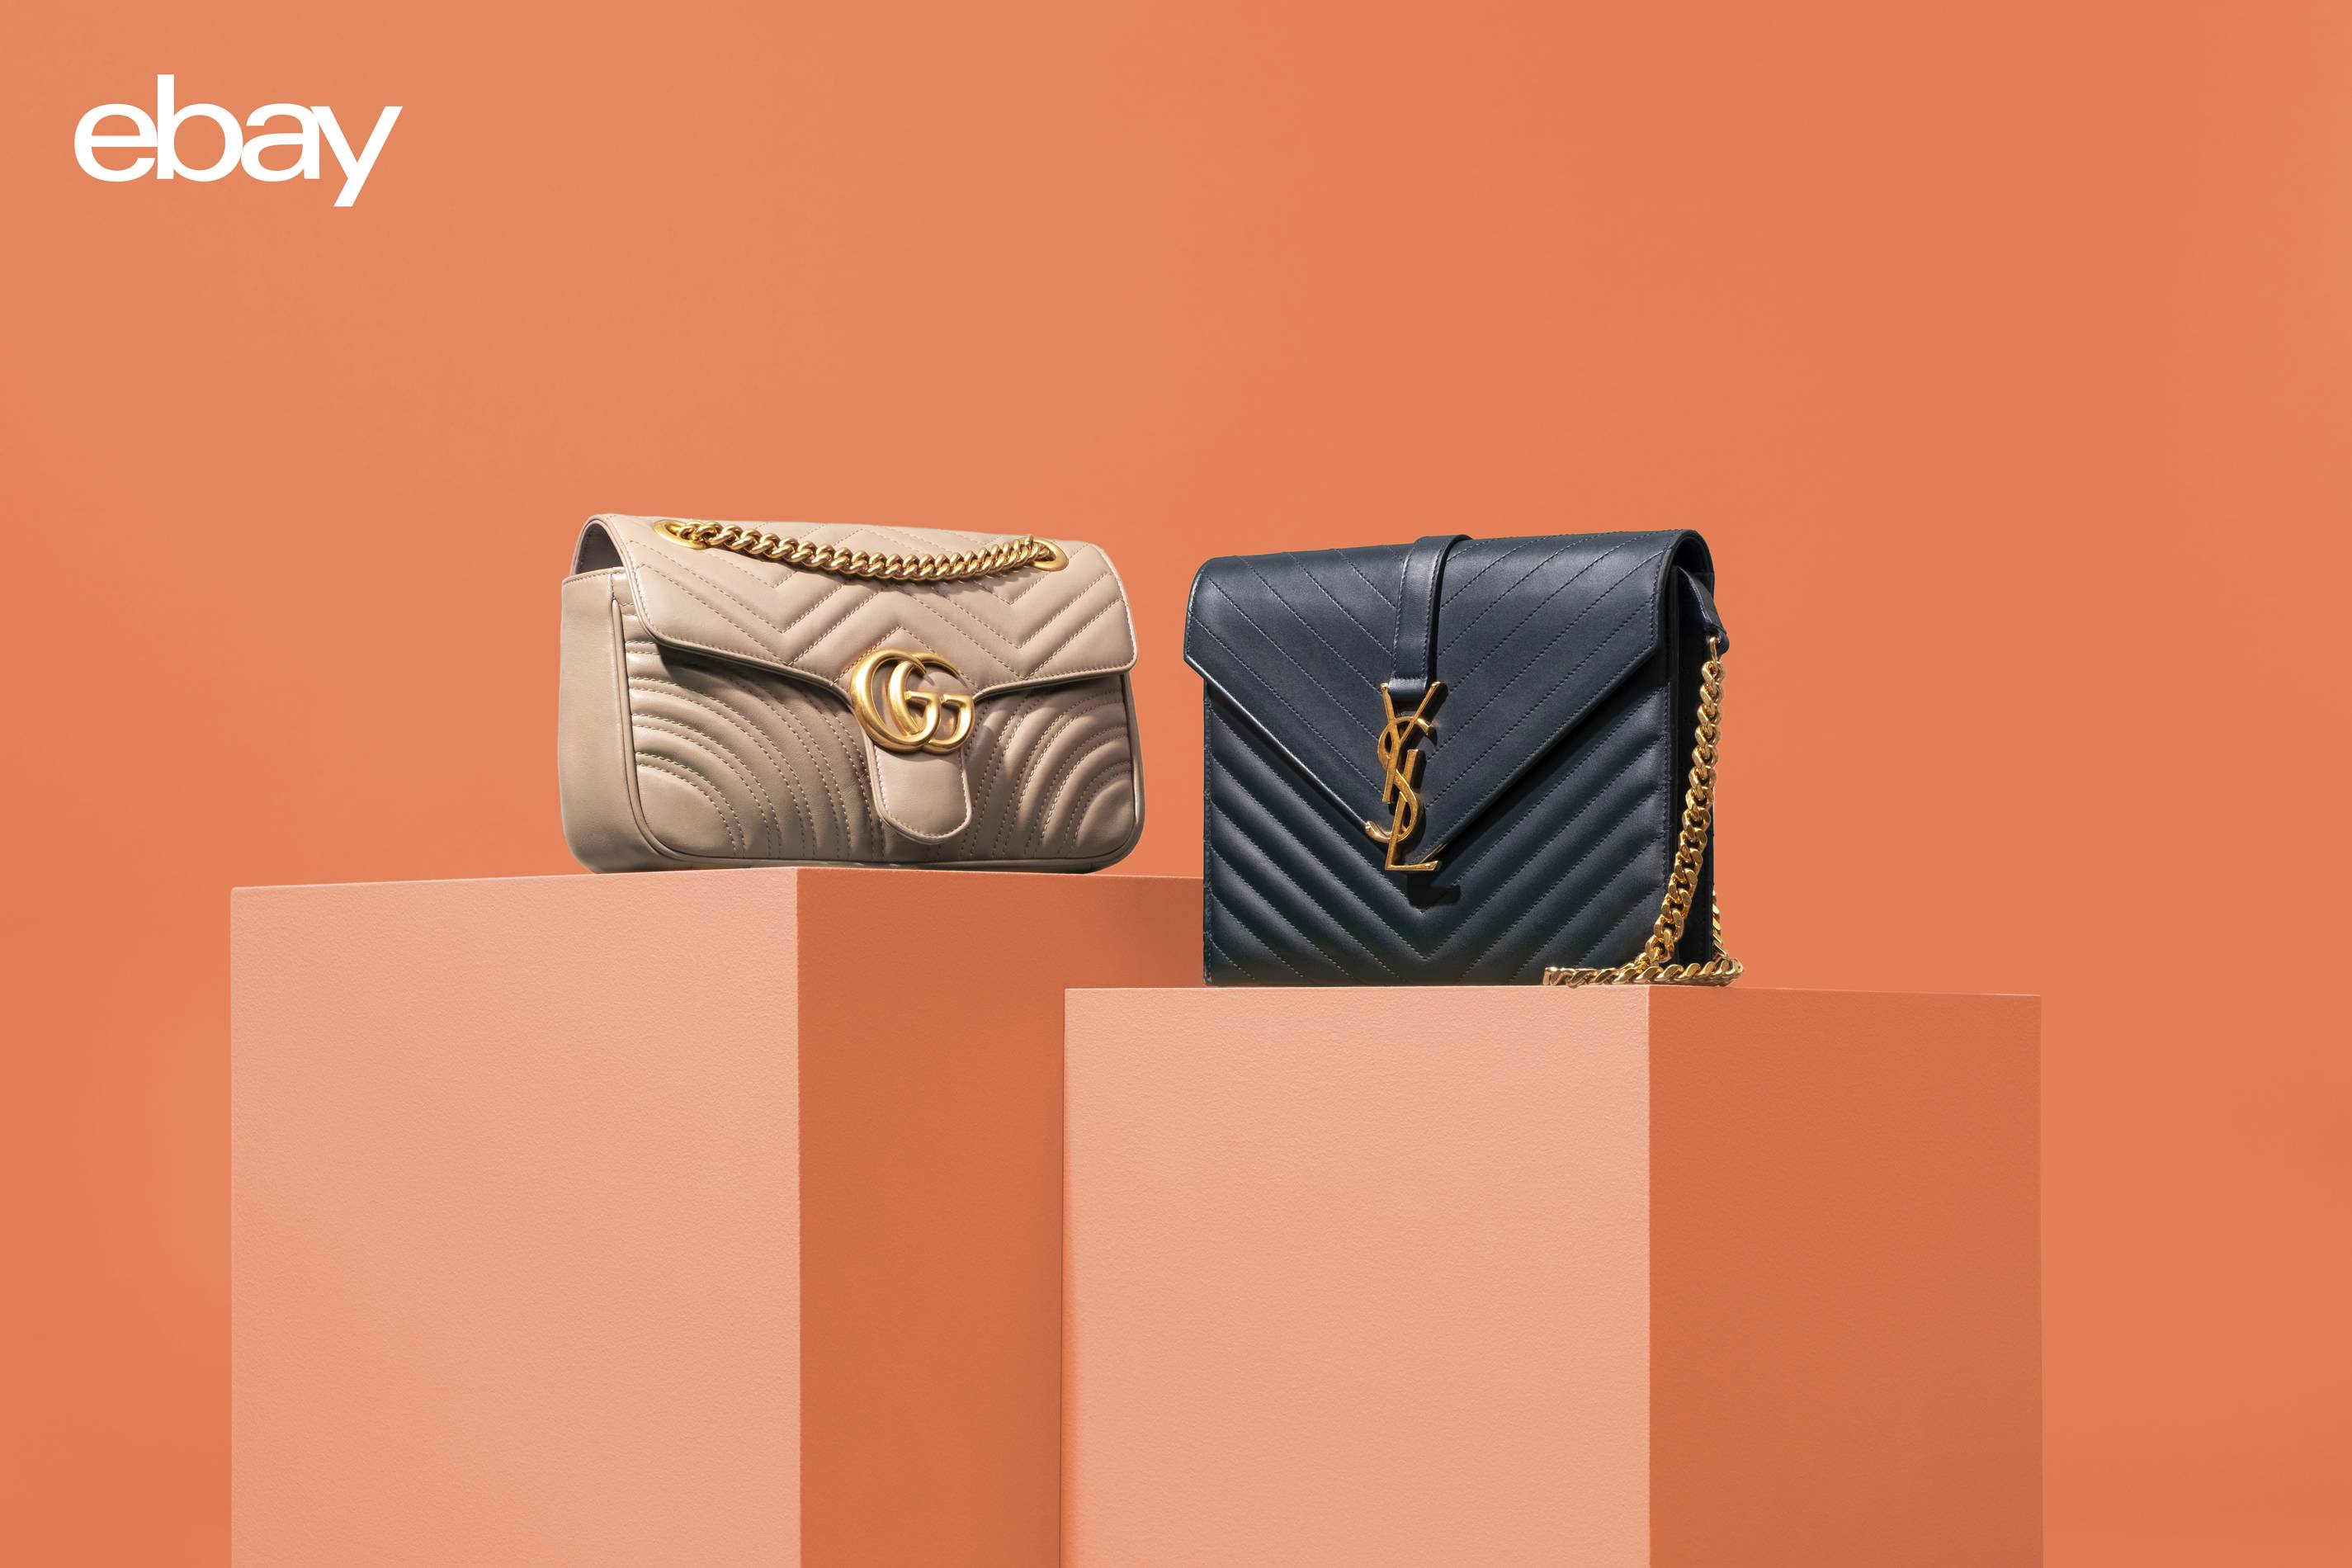 ebay designer handbags for sale